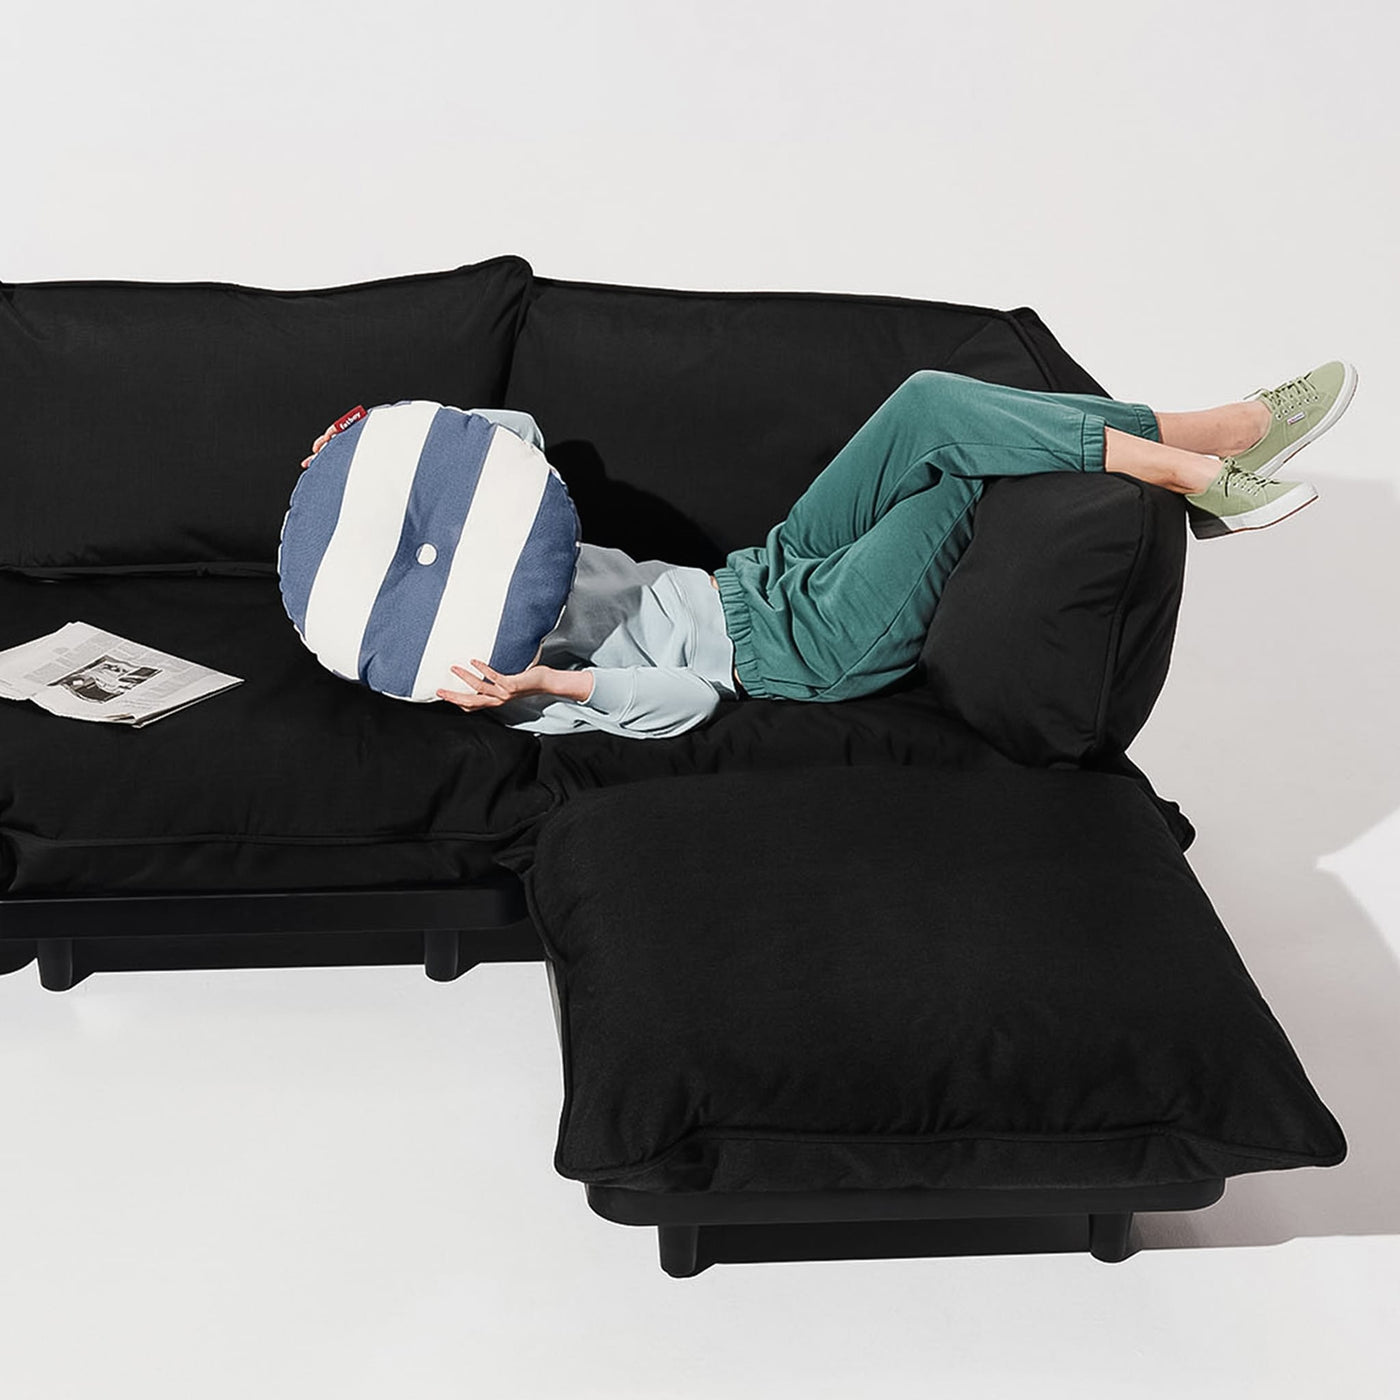 Paletti de Fatboy : sofa sectionnel modulable, parfait pour personnaliser votre espace extérieur.